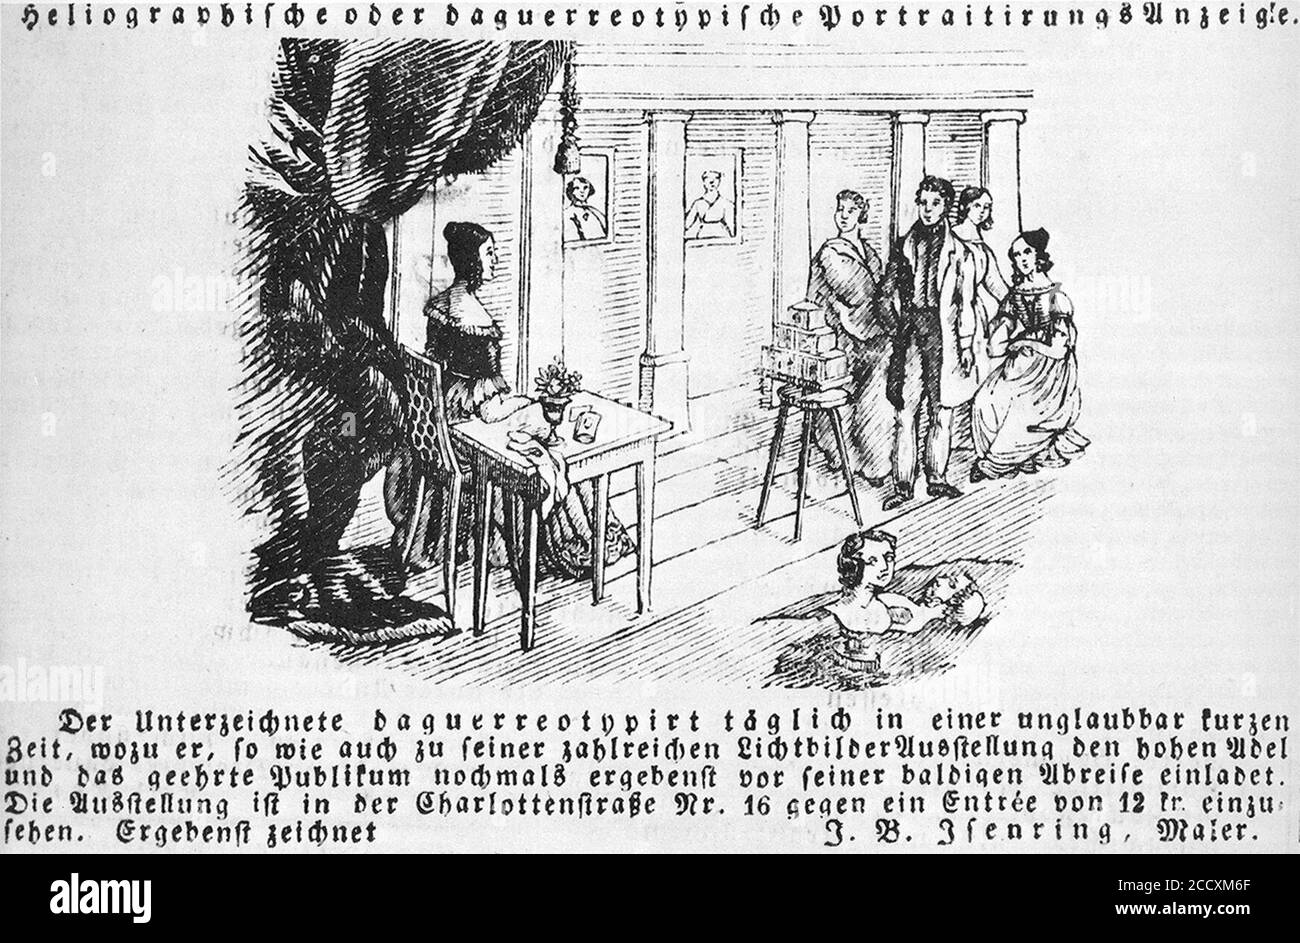 Johann Baptist Isenring in Stuttgart, Anzeige in der Schwäbischen Chronik, Mai 1841. Stock Photo